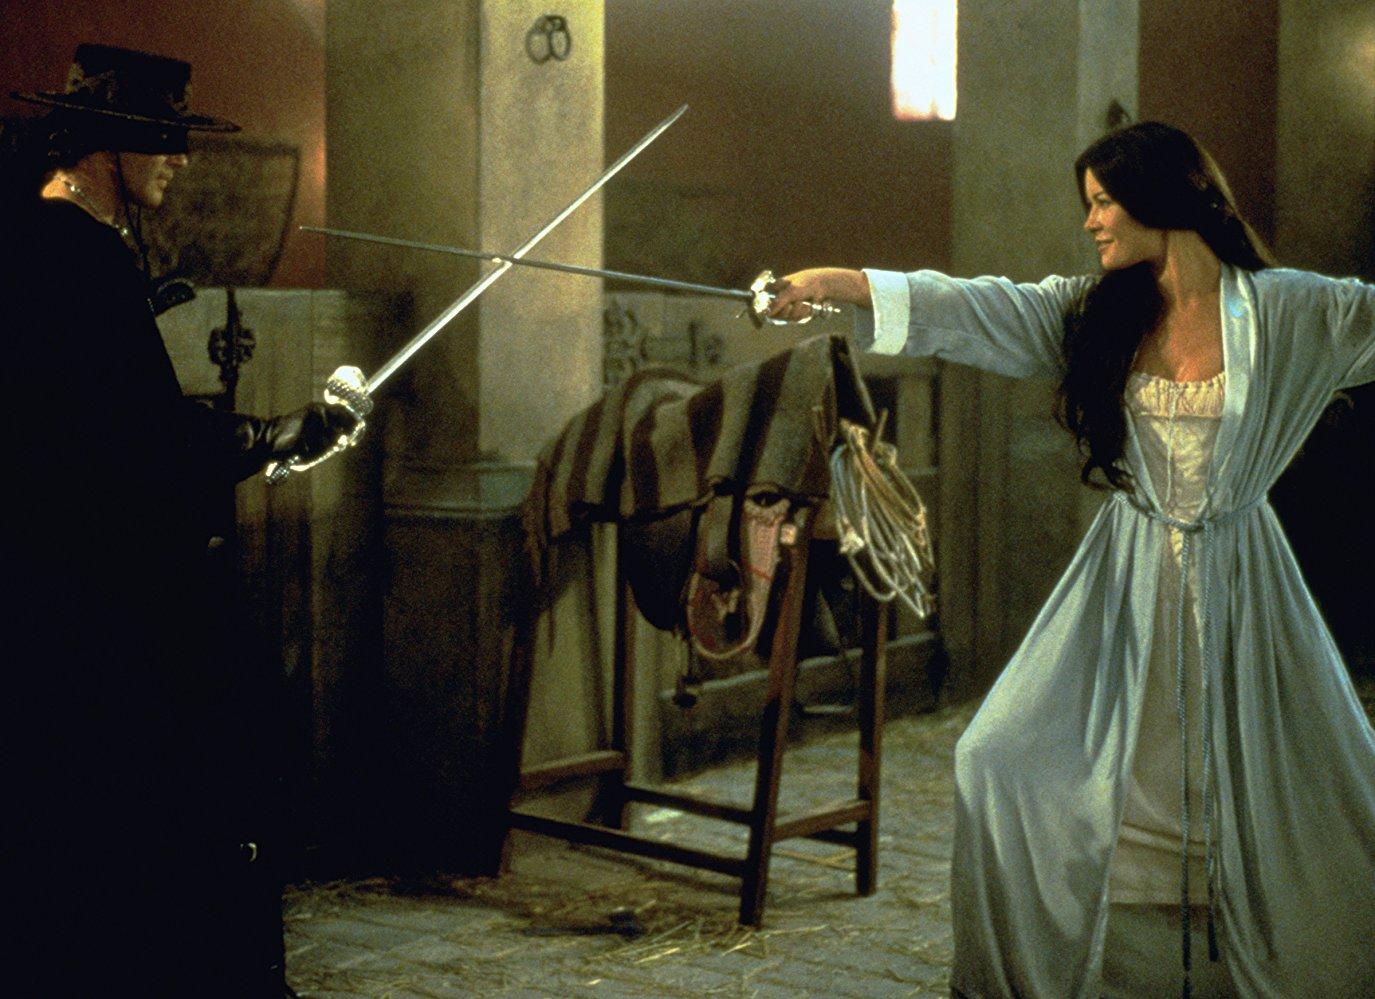 مشاهدة فيلم The Mask of Zorro 1998 مترجم HD اون لاين